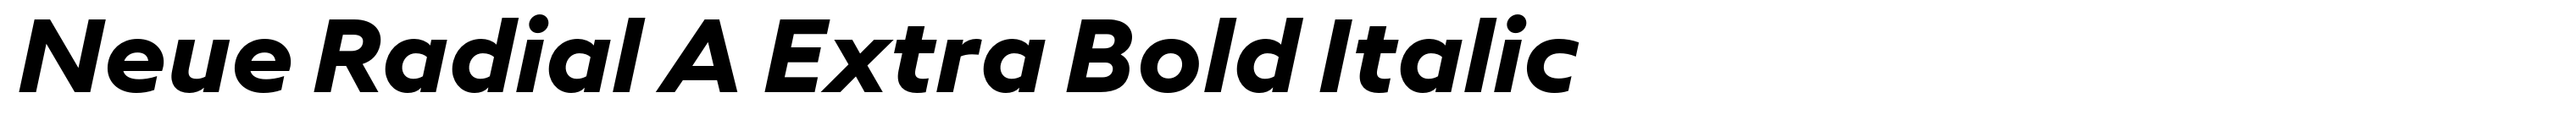 Neue Radial A Extra Bold Italic